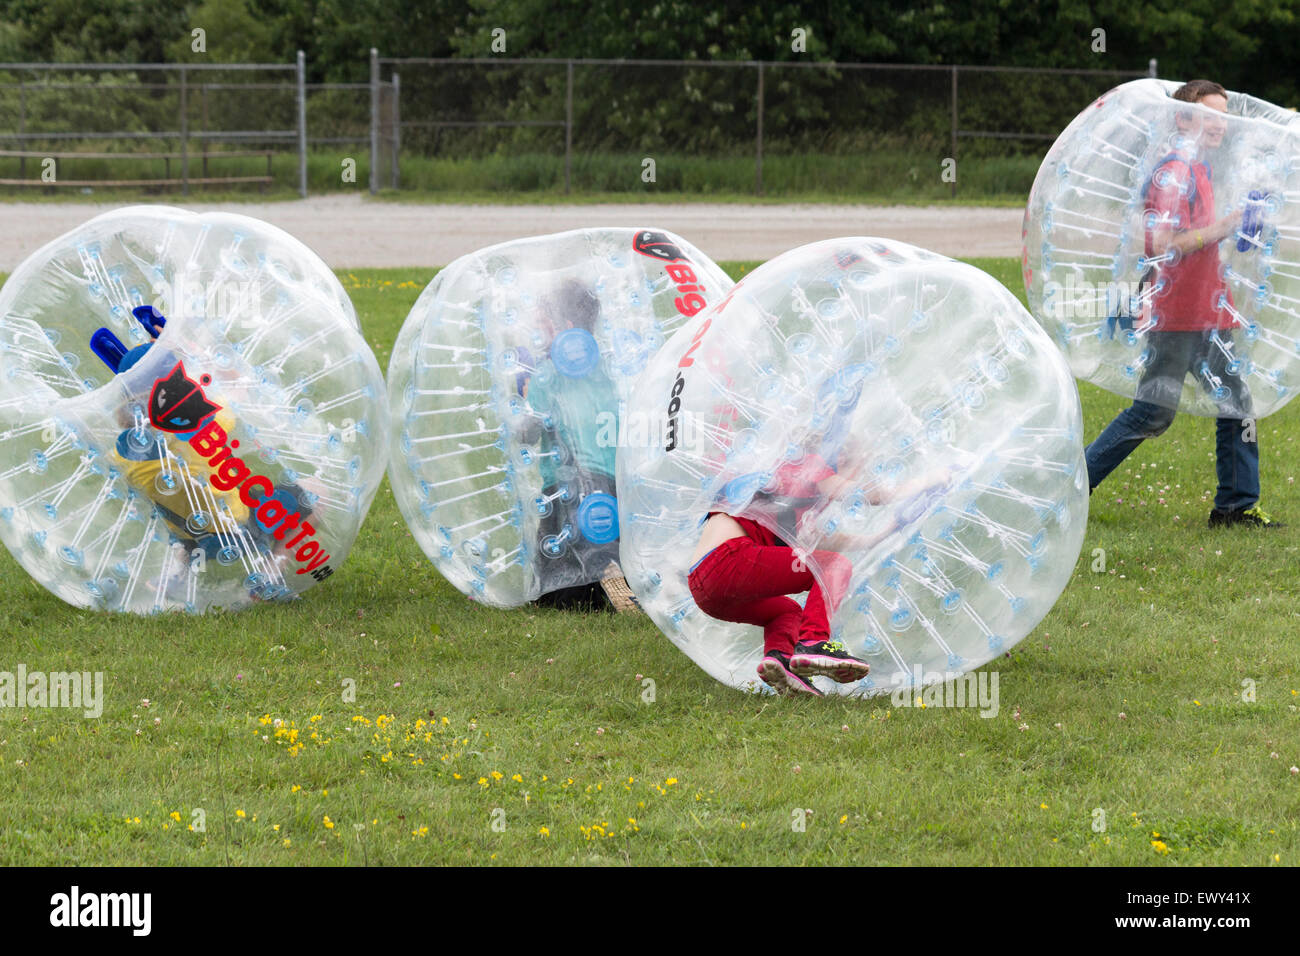 Vier Jungs im Teenageralter stoßen einander mit Stoßkugeln in Cannington, Ontario am Canada Day Feierlichkeiten Stockfoto